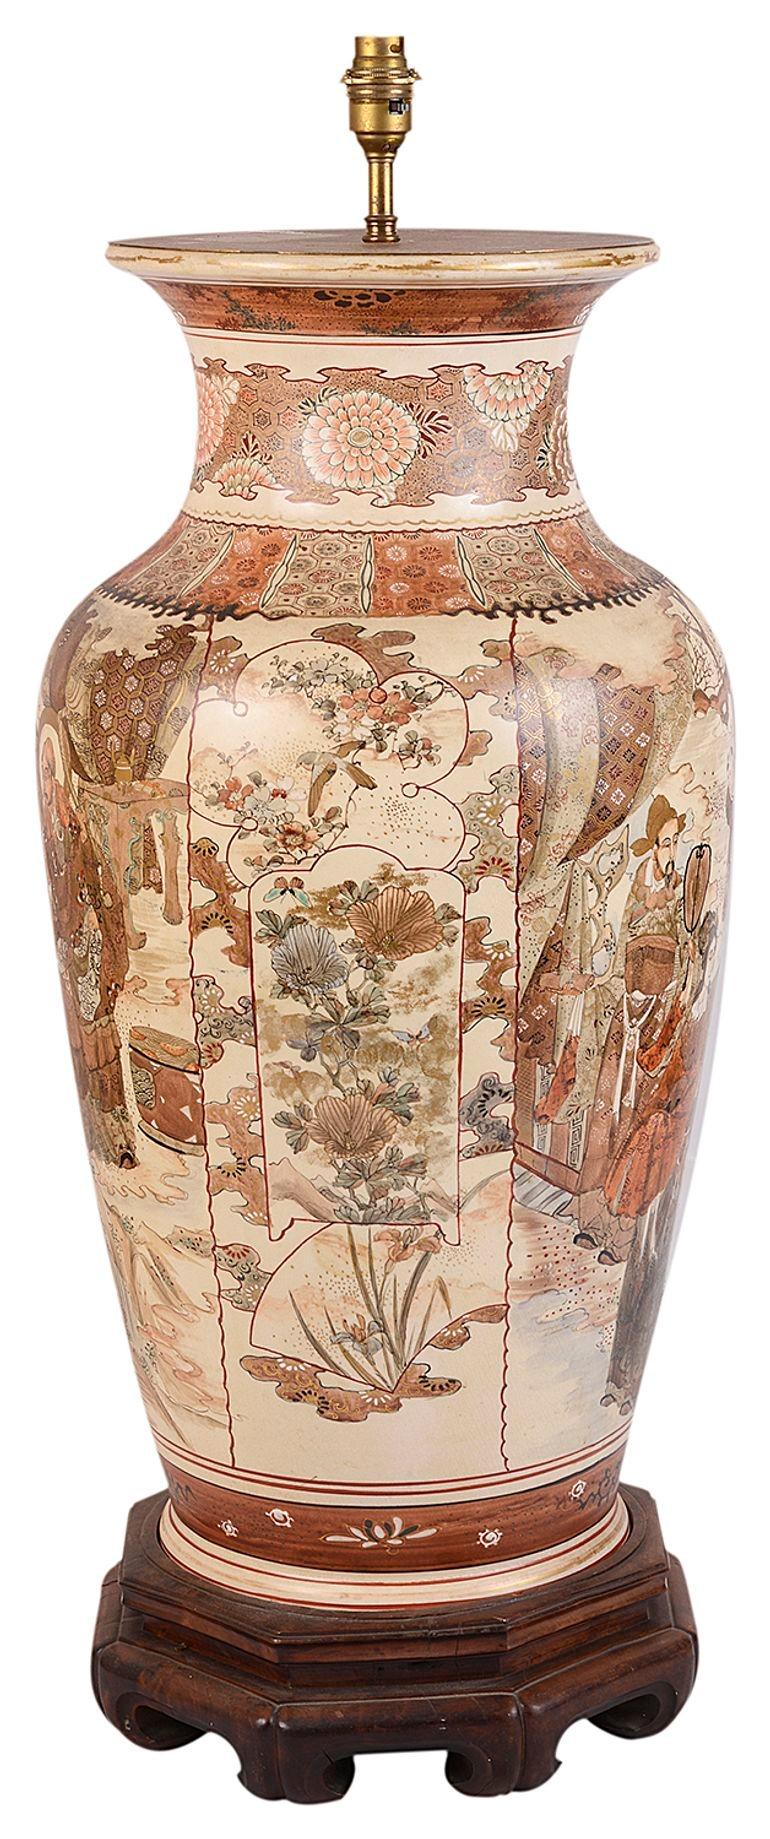 Vase / lampe en porcelaine japonaise de Satsuma de bonne qualité datant de la fin du 19e siècle. Elle présente de magnifiques scènes classiques peintes à la main représentant des courtisans, des commerçants et des enfants entre des bordures de